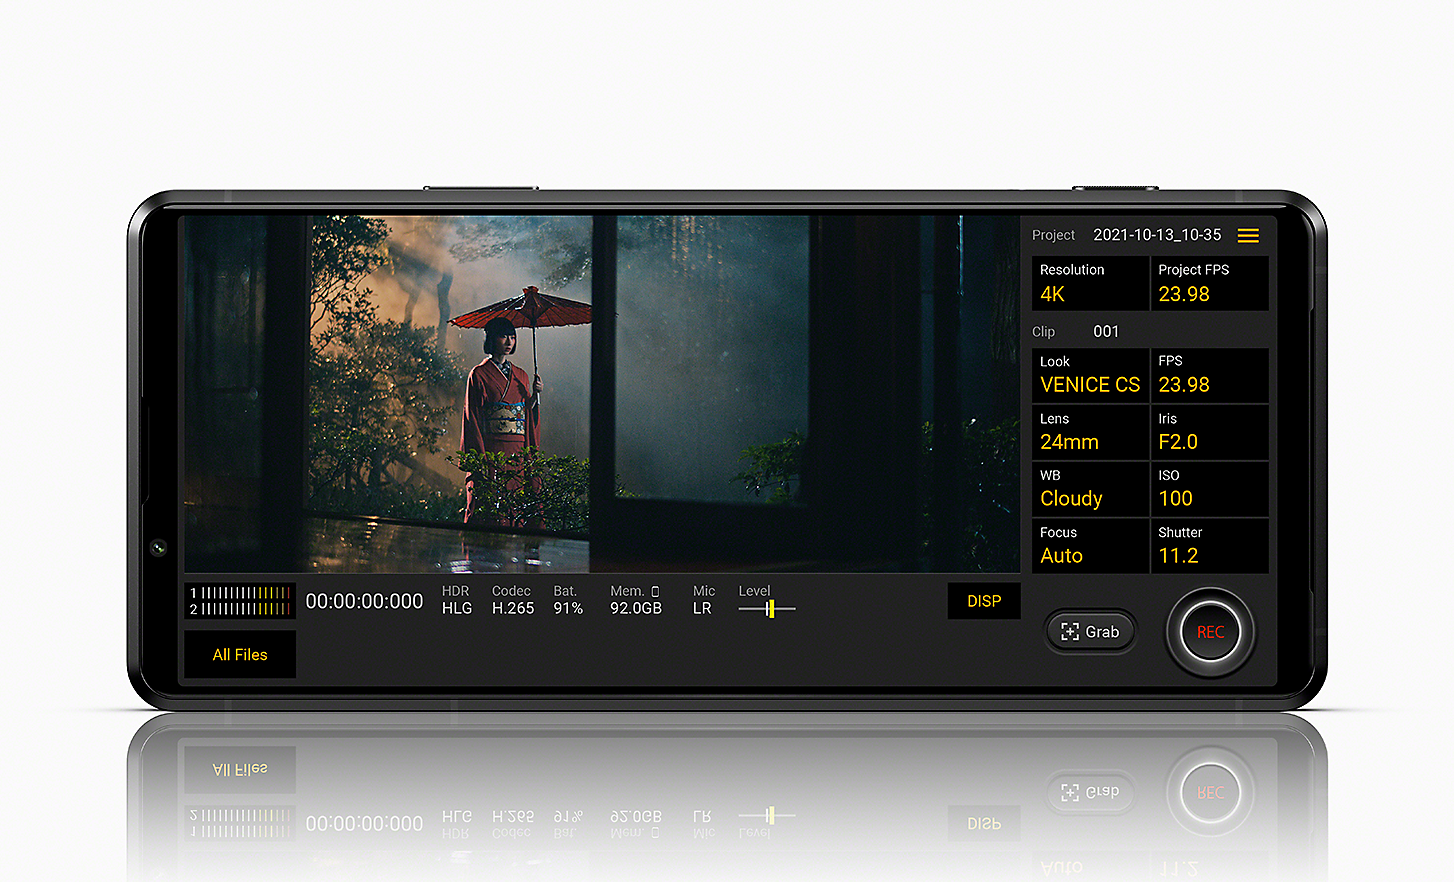 Xperia PRO-I 顯示屏顯示 Cinematography Pro 使用者介面，以及一位撐洋傘女子的相片